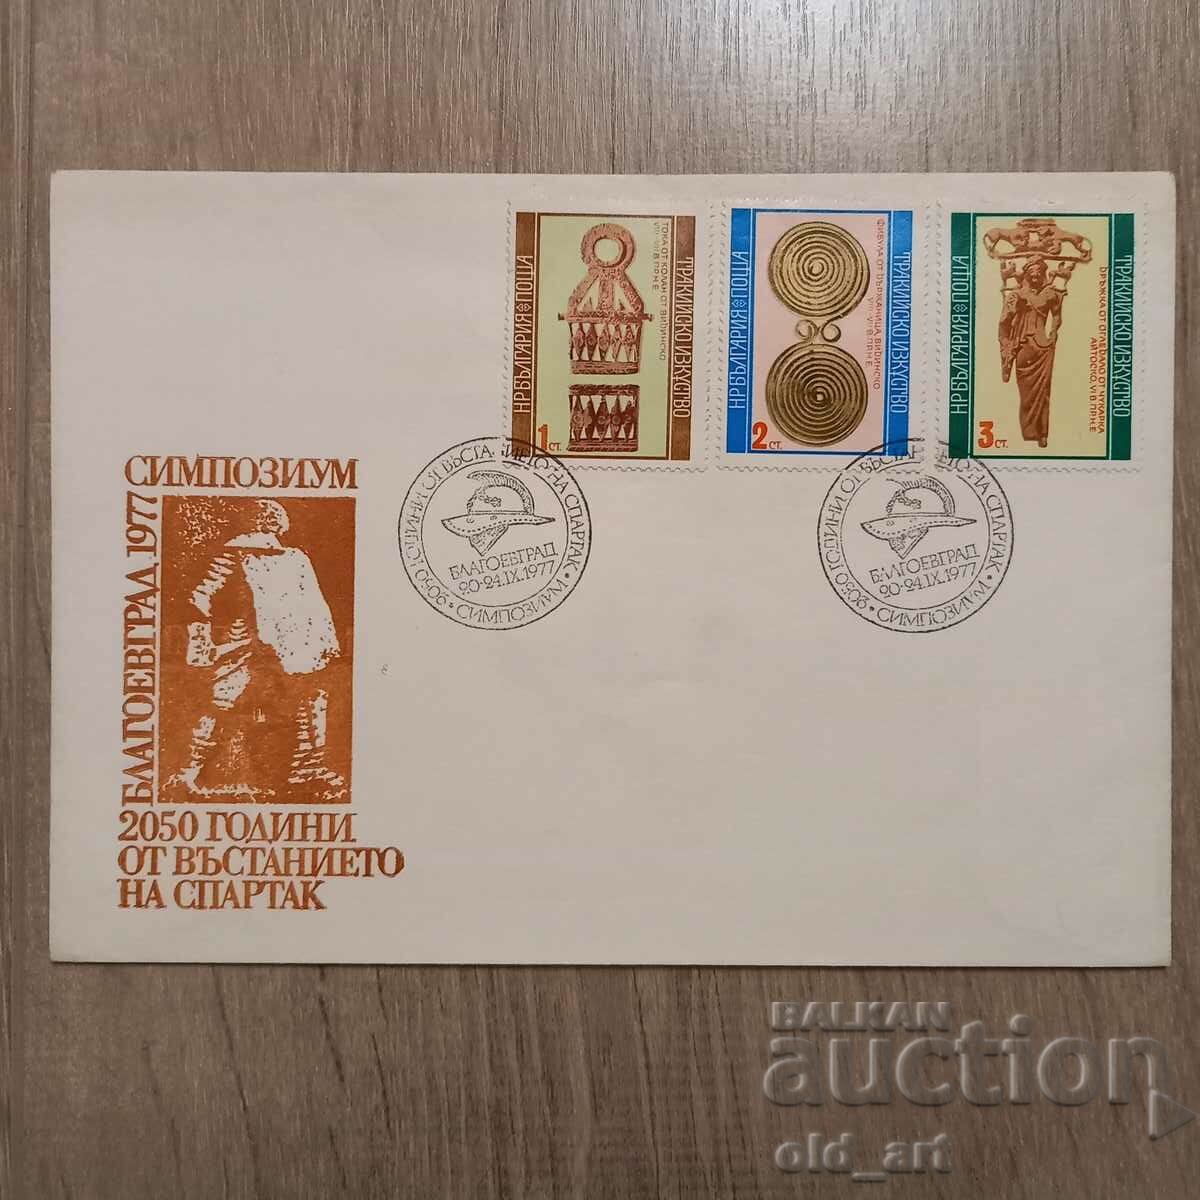 Пощенски плик - Симпозиум 2050 г. от въстанието на Спартак